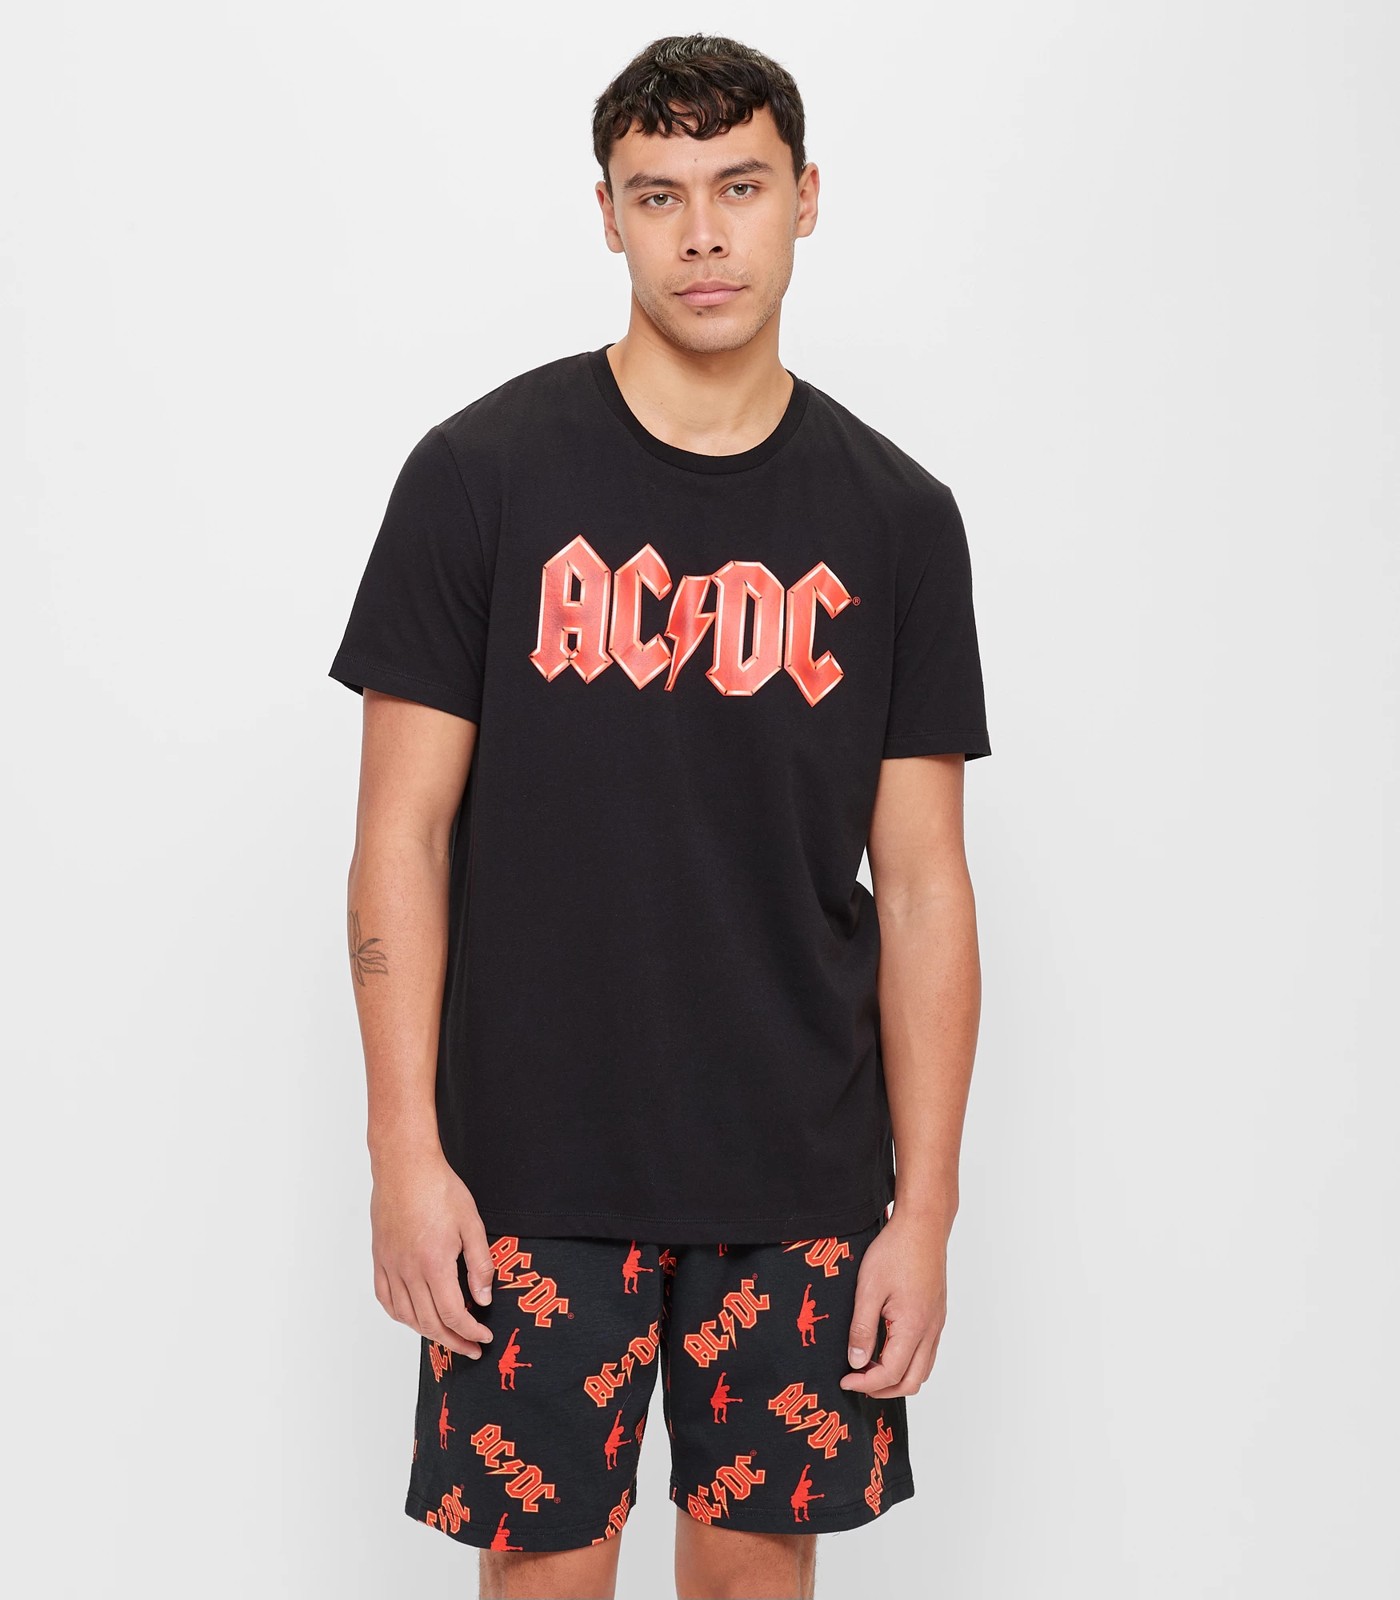 ACDC Licensed Pyjama Set | Target Australia